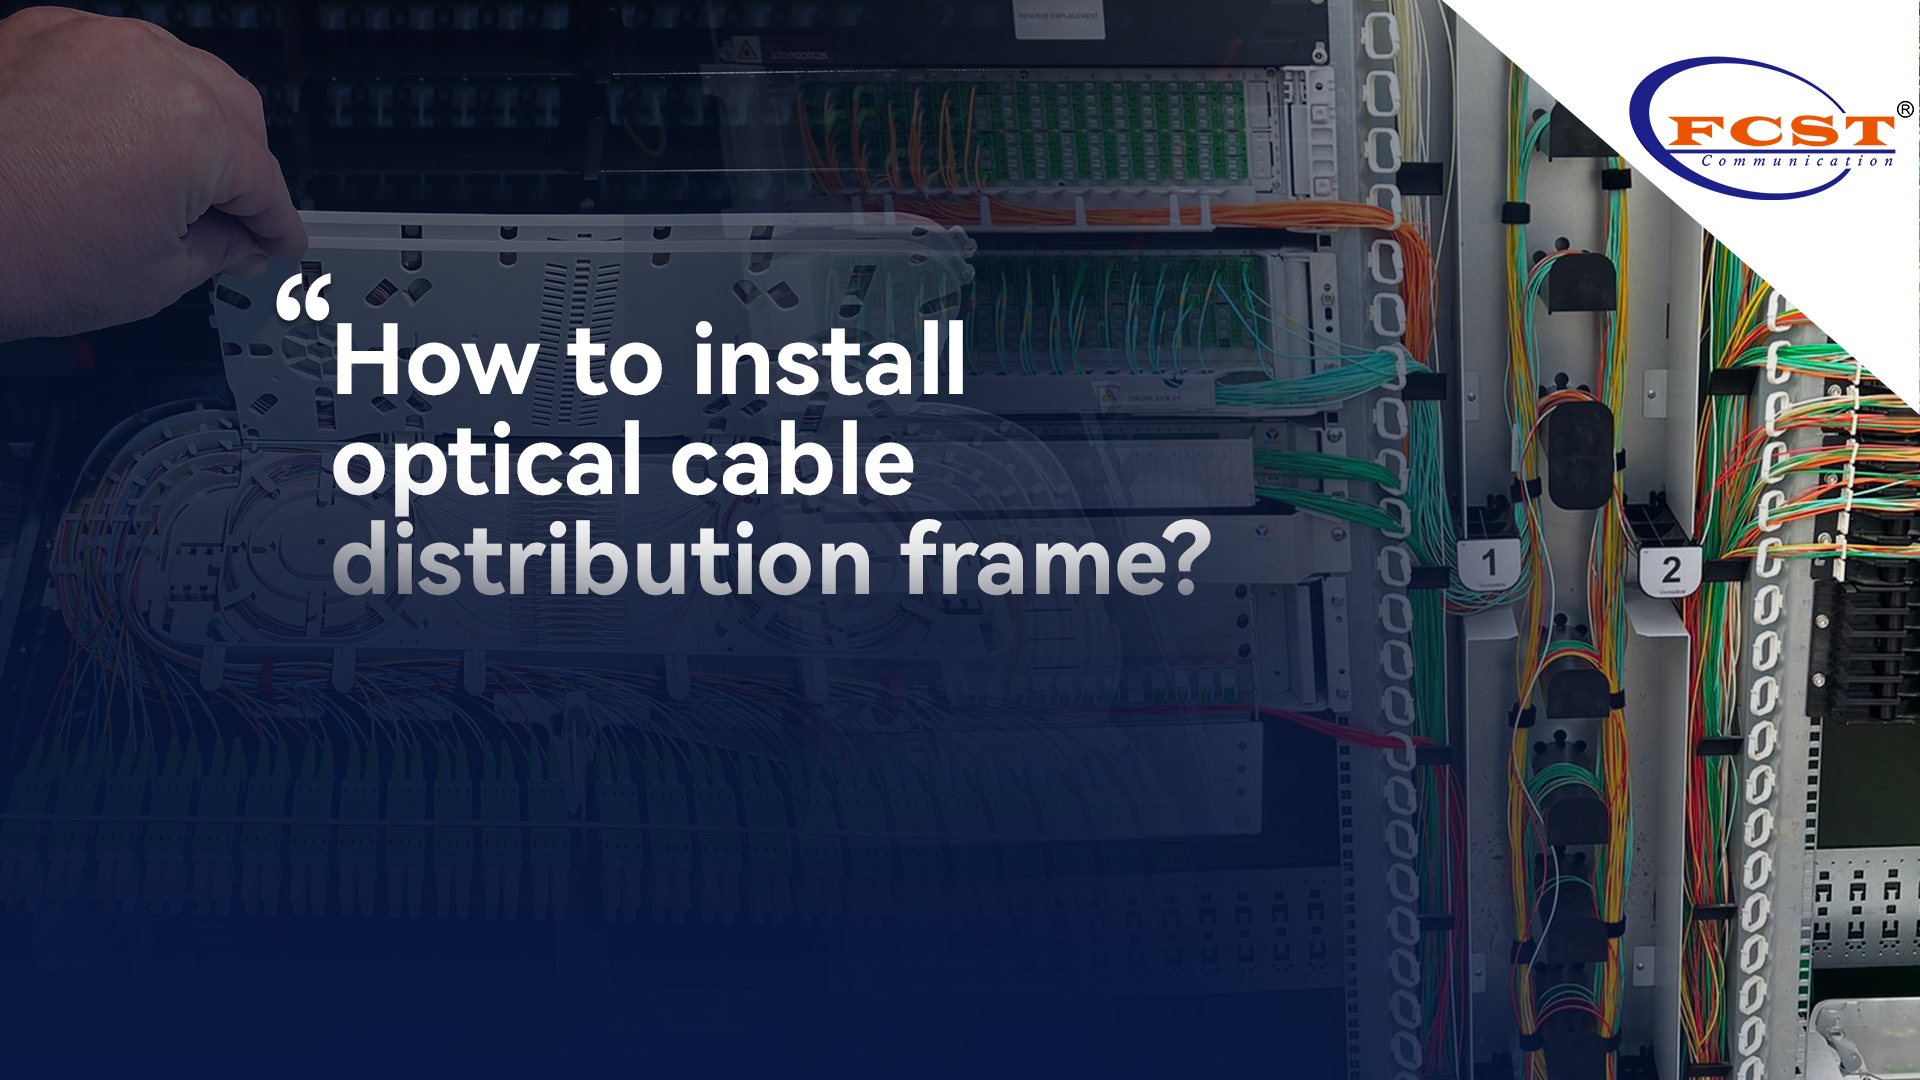 ¿Cómo instalar el marco de distribución de cable óptico?